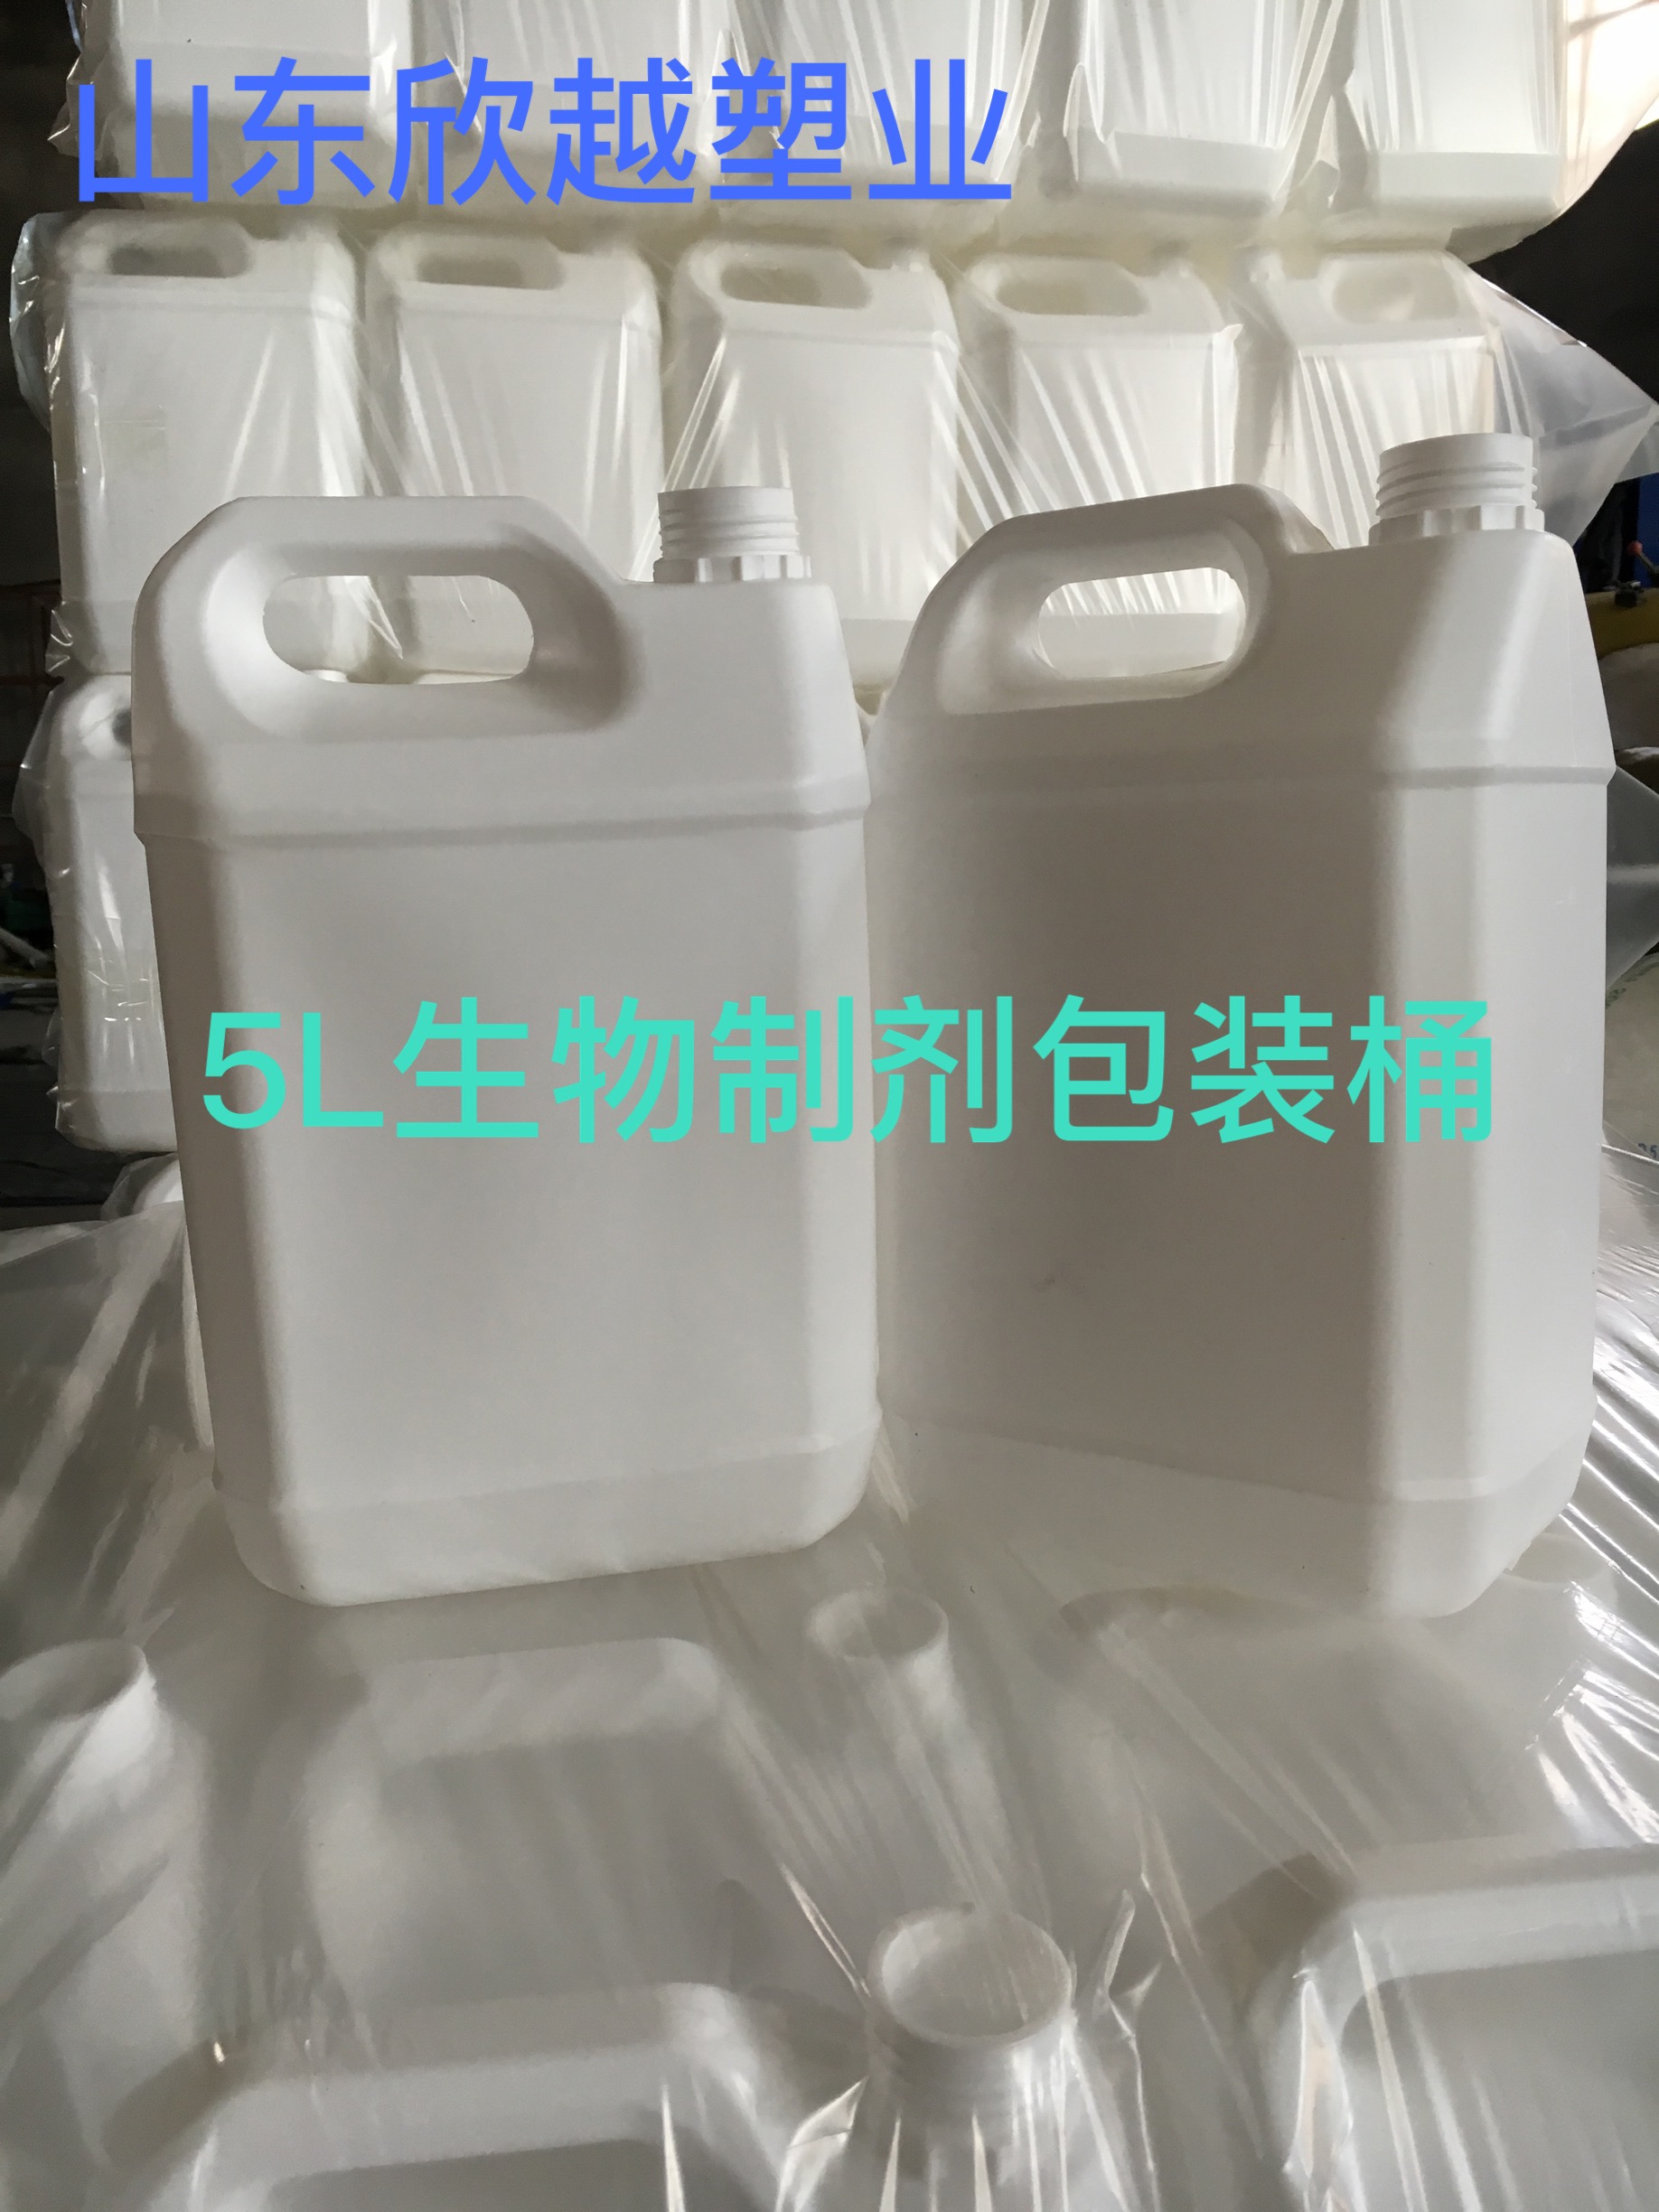 青岛5升塑料桶，山东25升塑料桶,庆云50升塑料桶,10升塑料桶 青岛5升塑料桶厂家